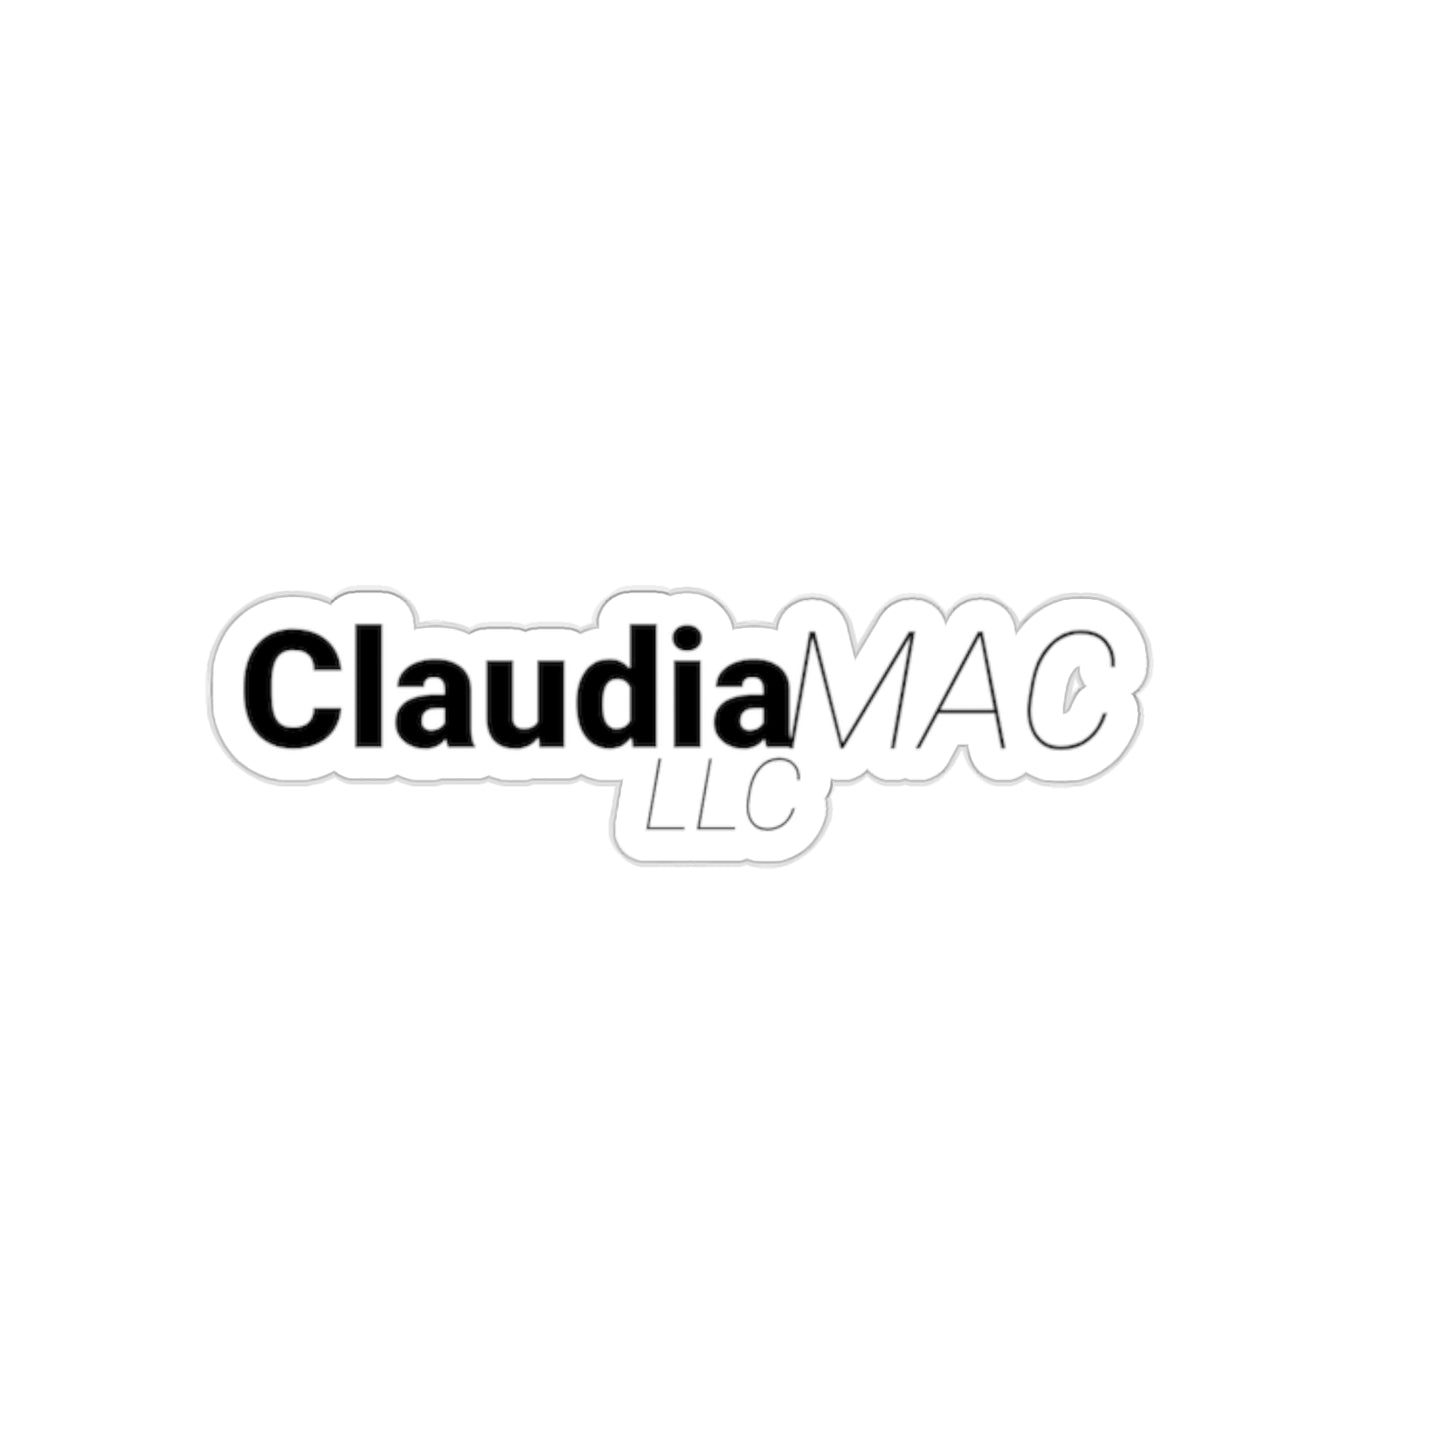 Claudia Mac LLC Kiss-Cut Stickers